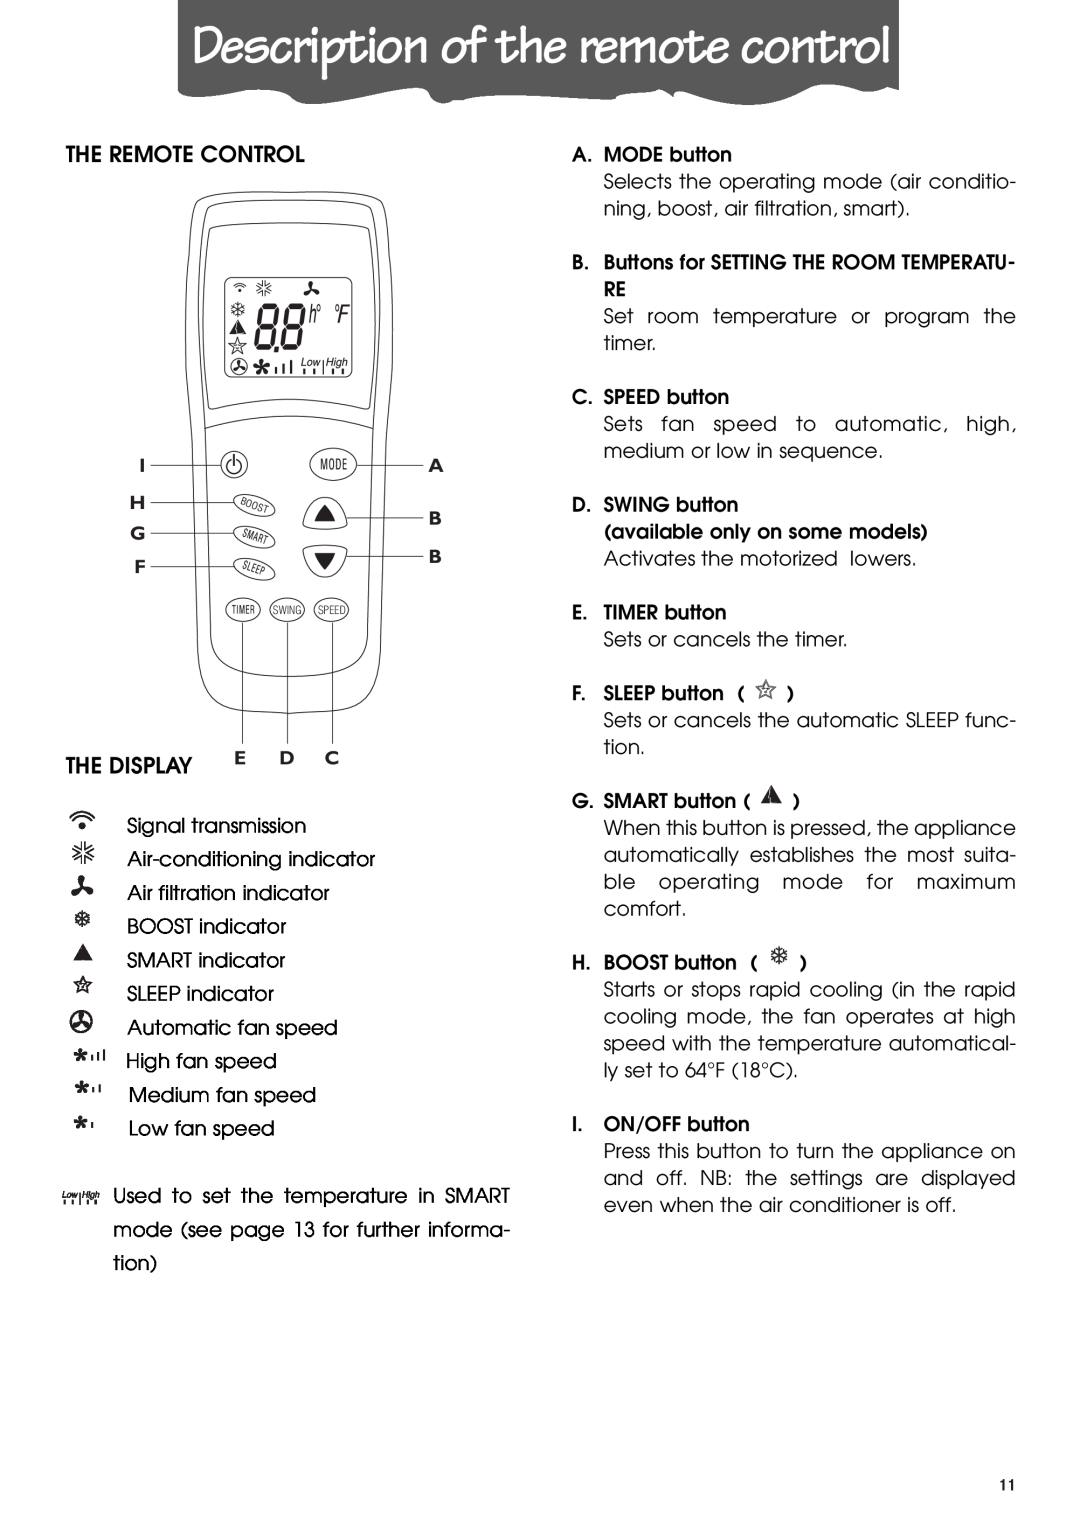 DeLonghi PACL90 specifications Description of the remote control, The Remote Control, The Display E D C, H G F 